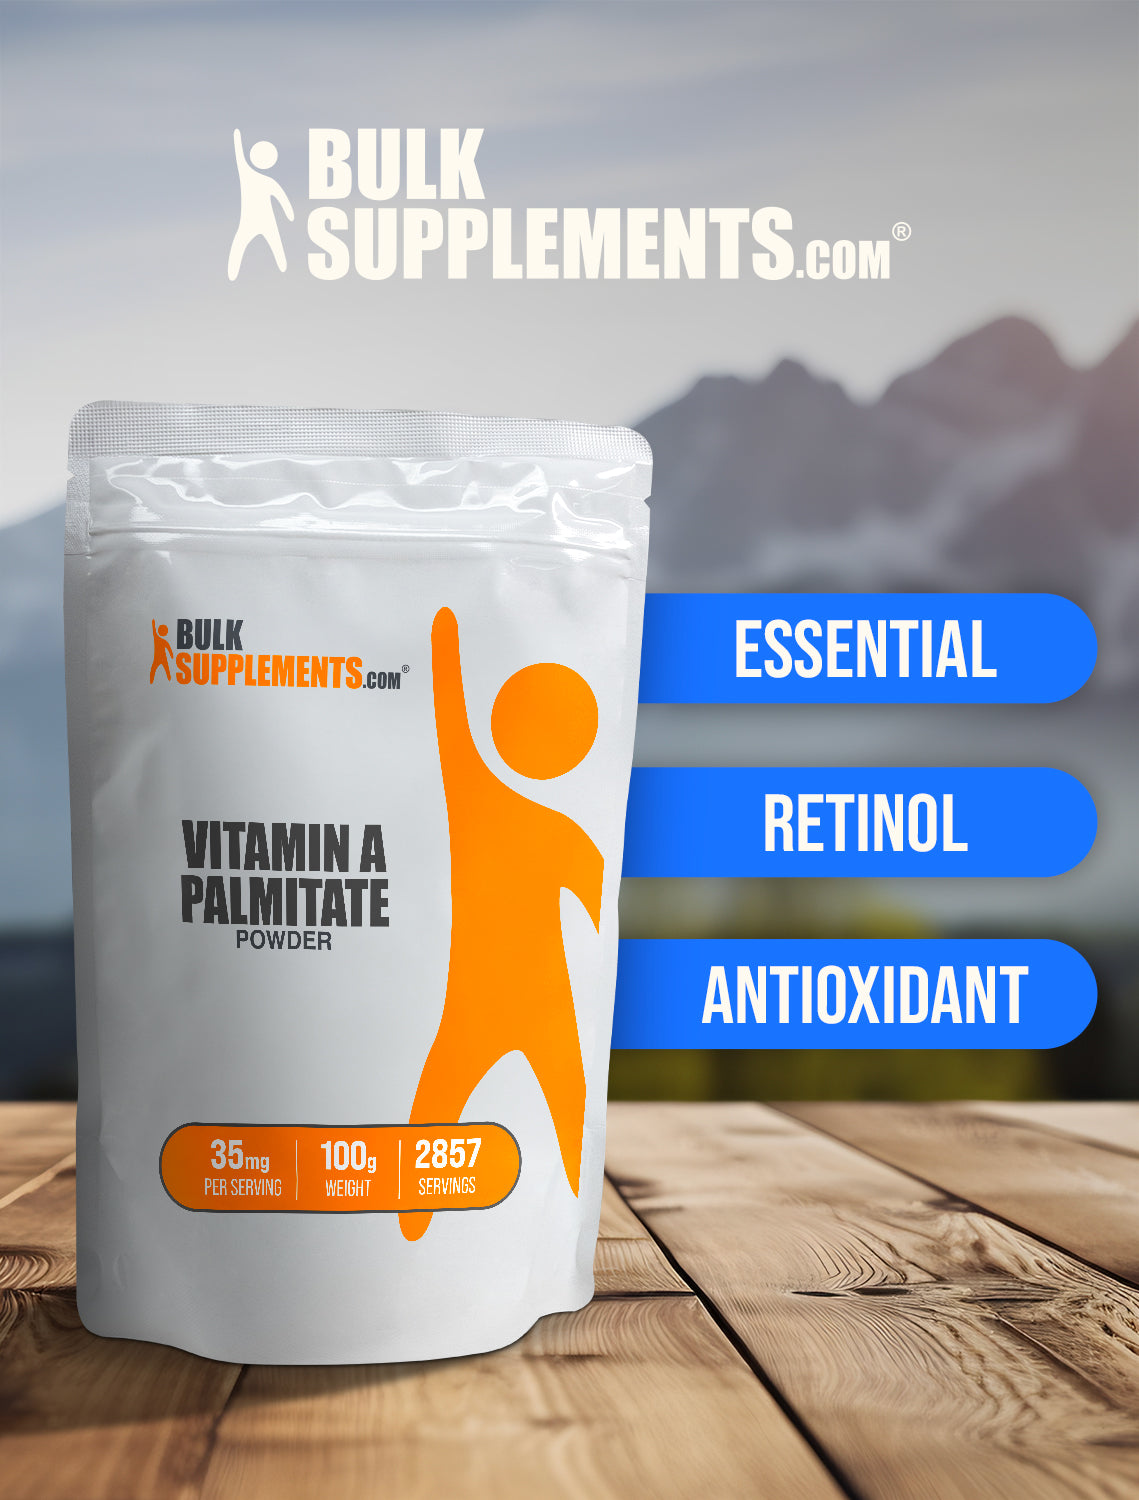 Vitamin A Palmitate powder keyword image 100g